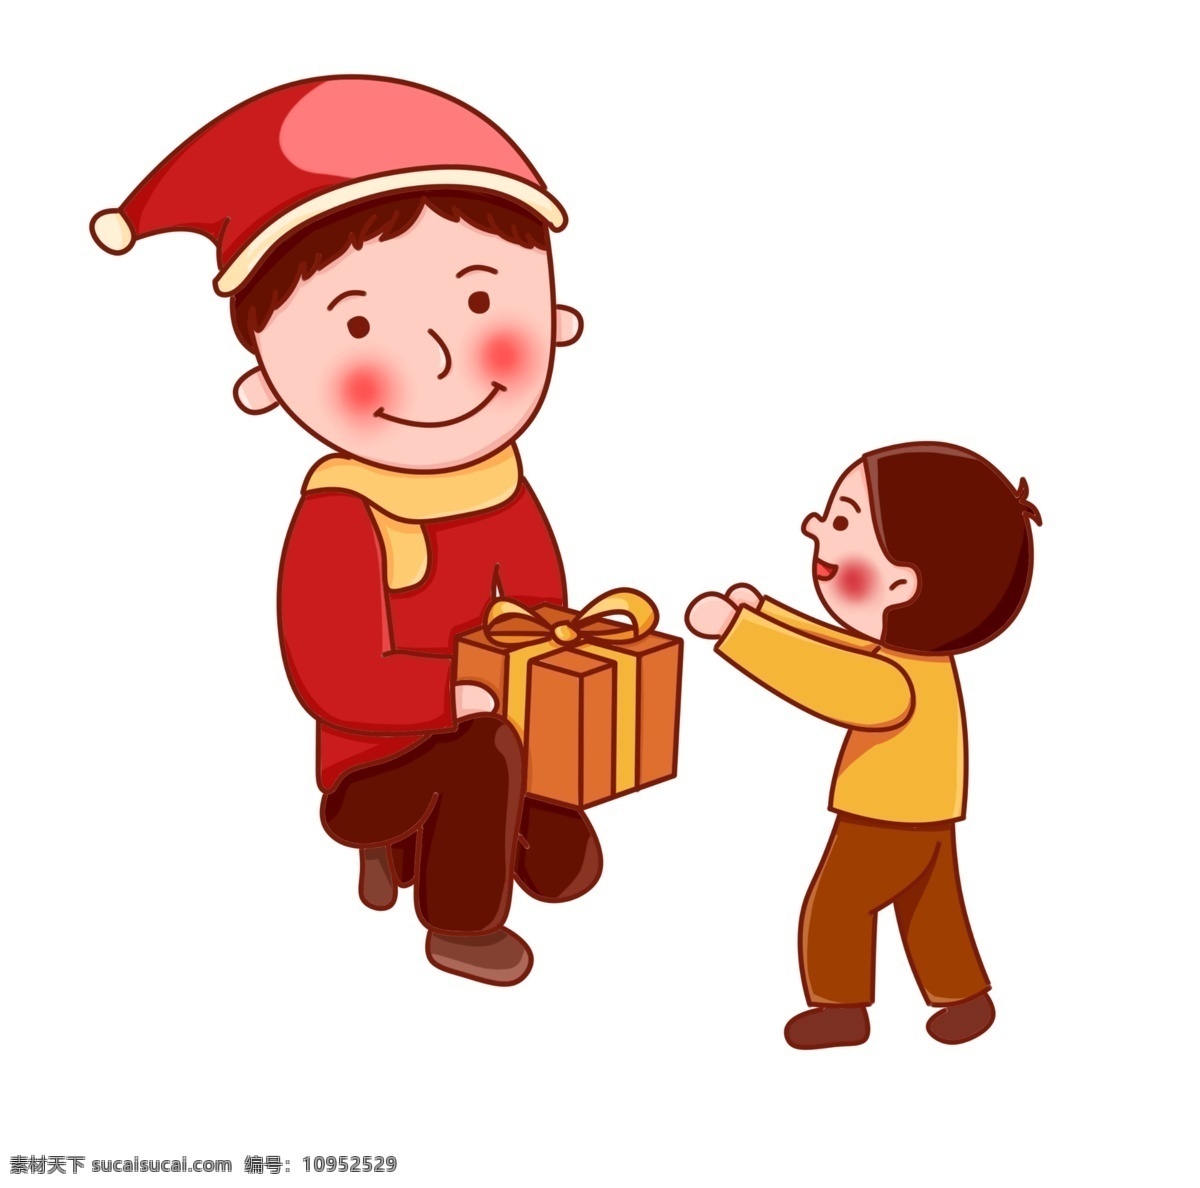 圣诞 圣诞节 夜 小孩 大人 礼物 红色 卡通 手绘 免 扣 圣诞夜 圣诞树 送礼 圣诞礼物 黄色 卡通手绘 可爱 免扣